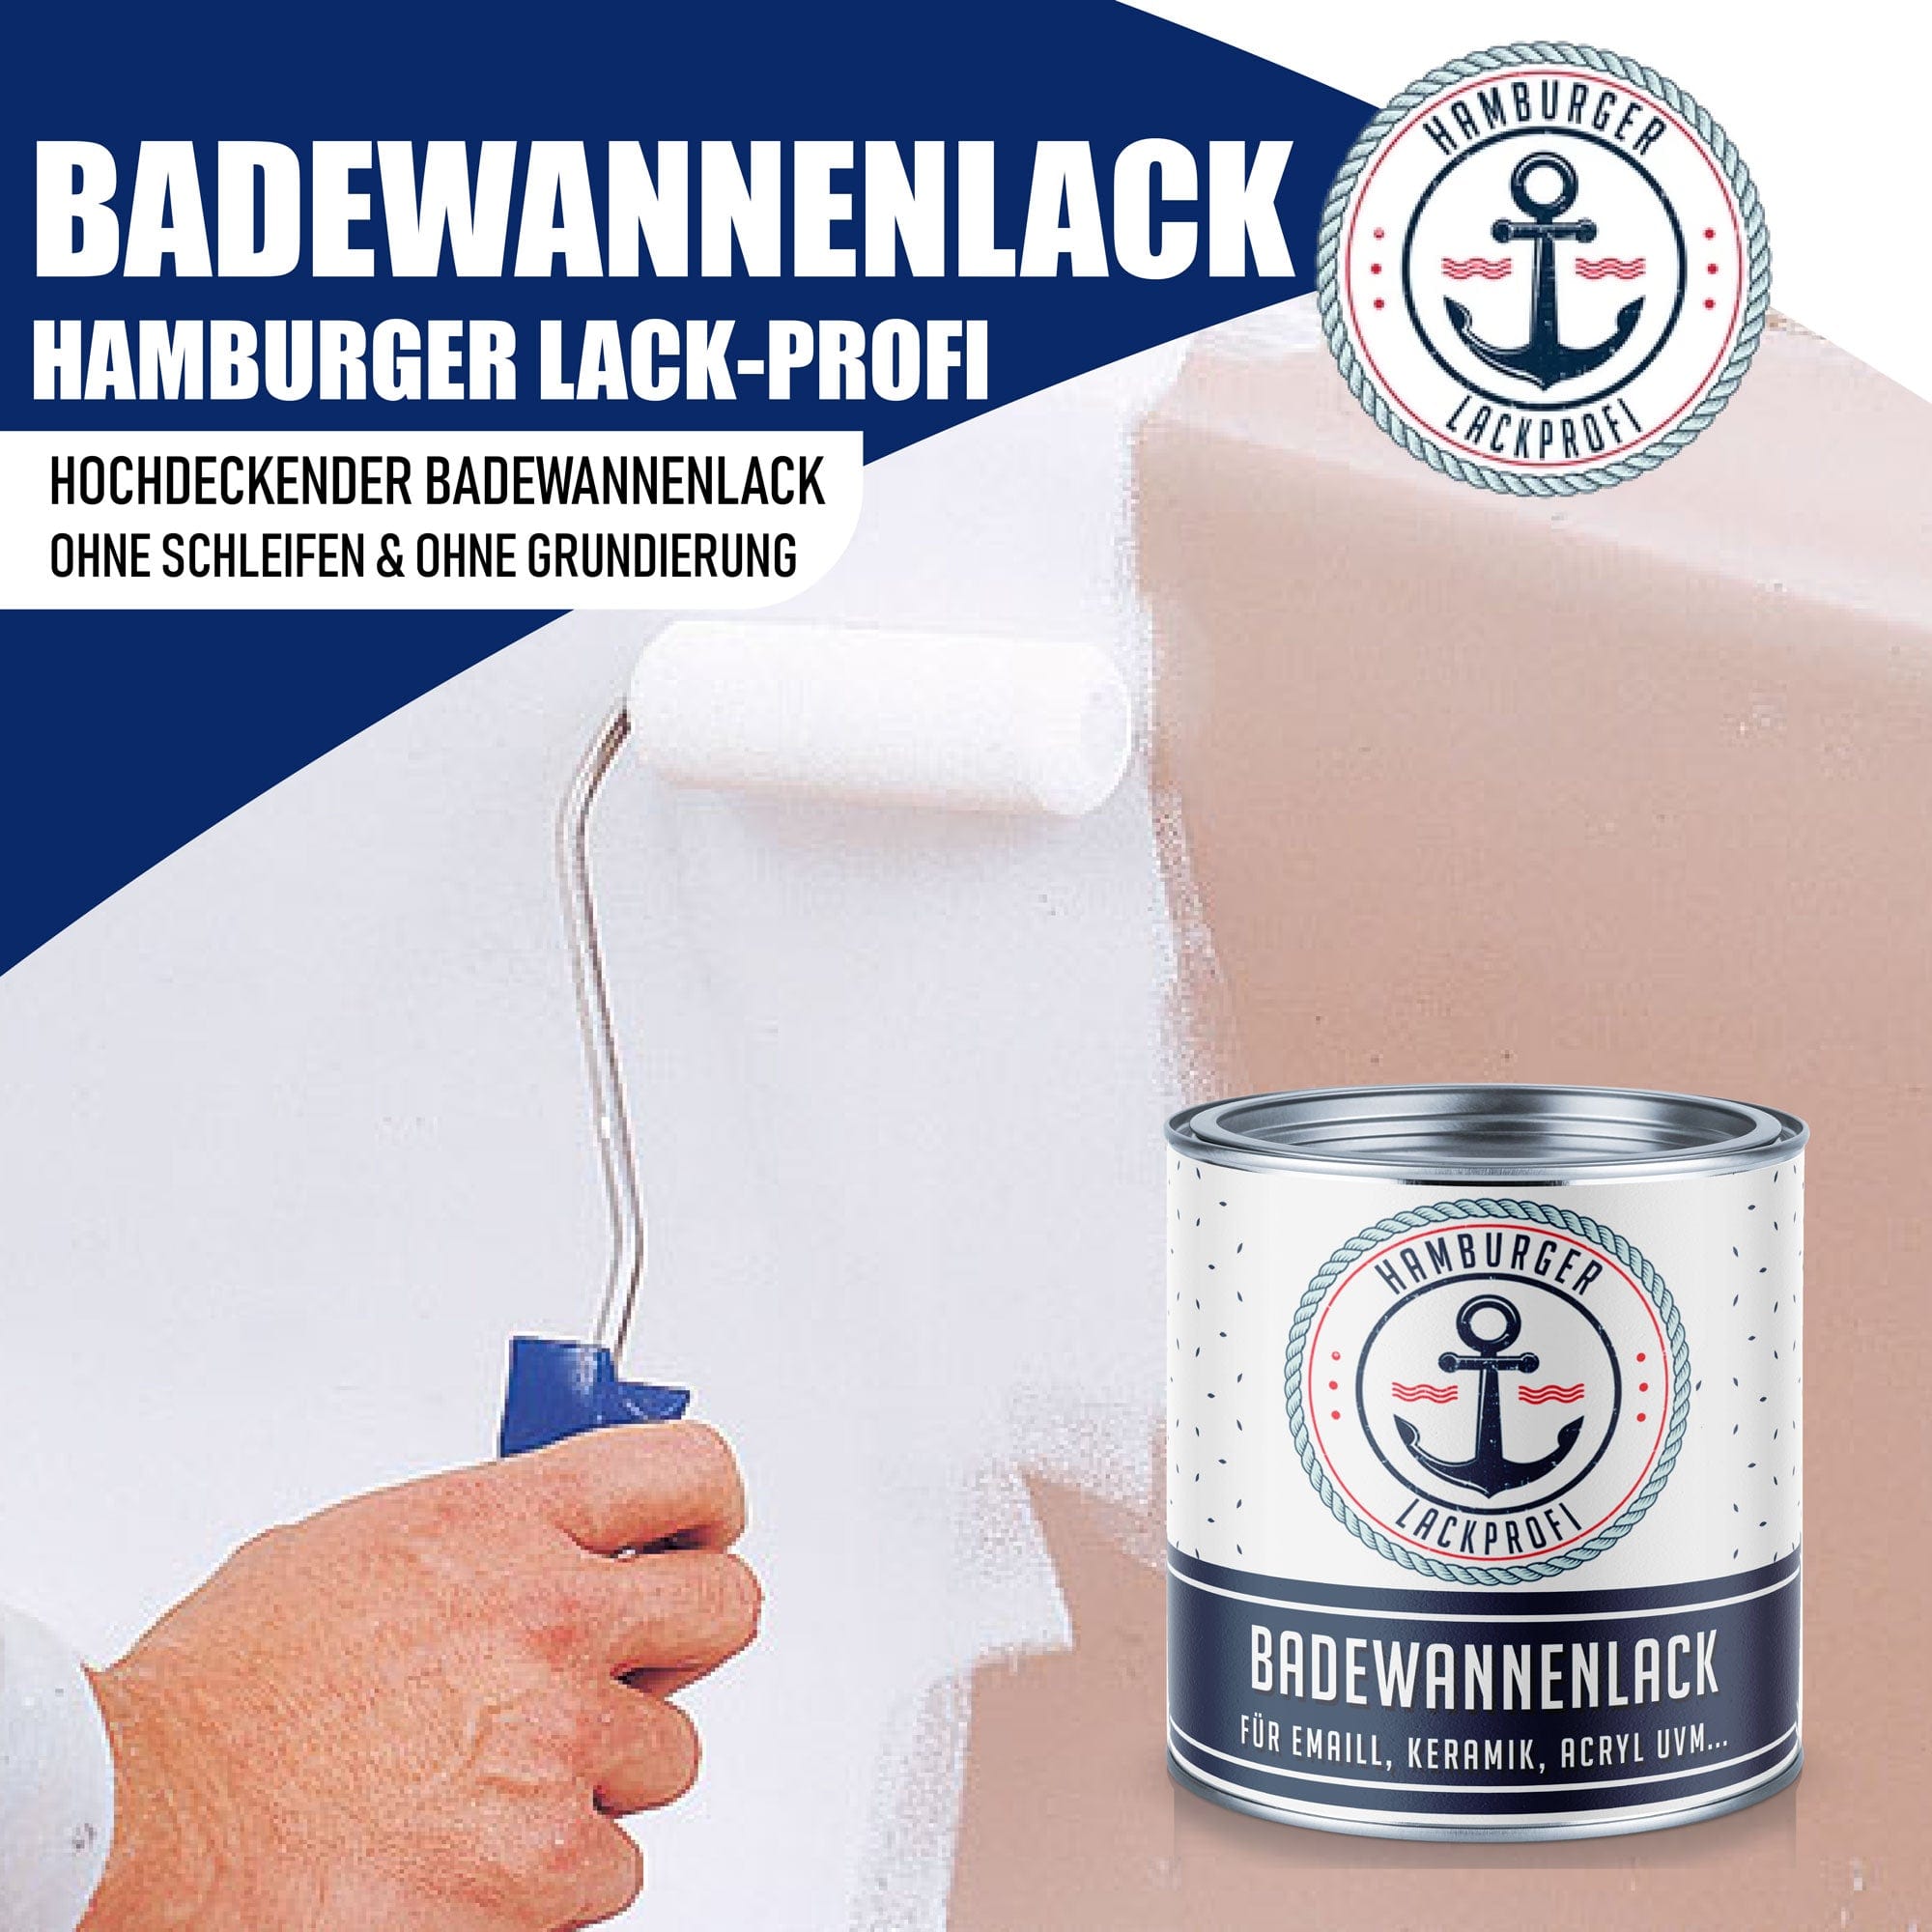 Hamburger Lack-Profi Badewannenlack Hamburger Lack-Profi 2K Badewannenlack